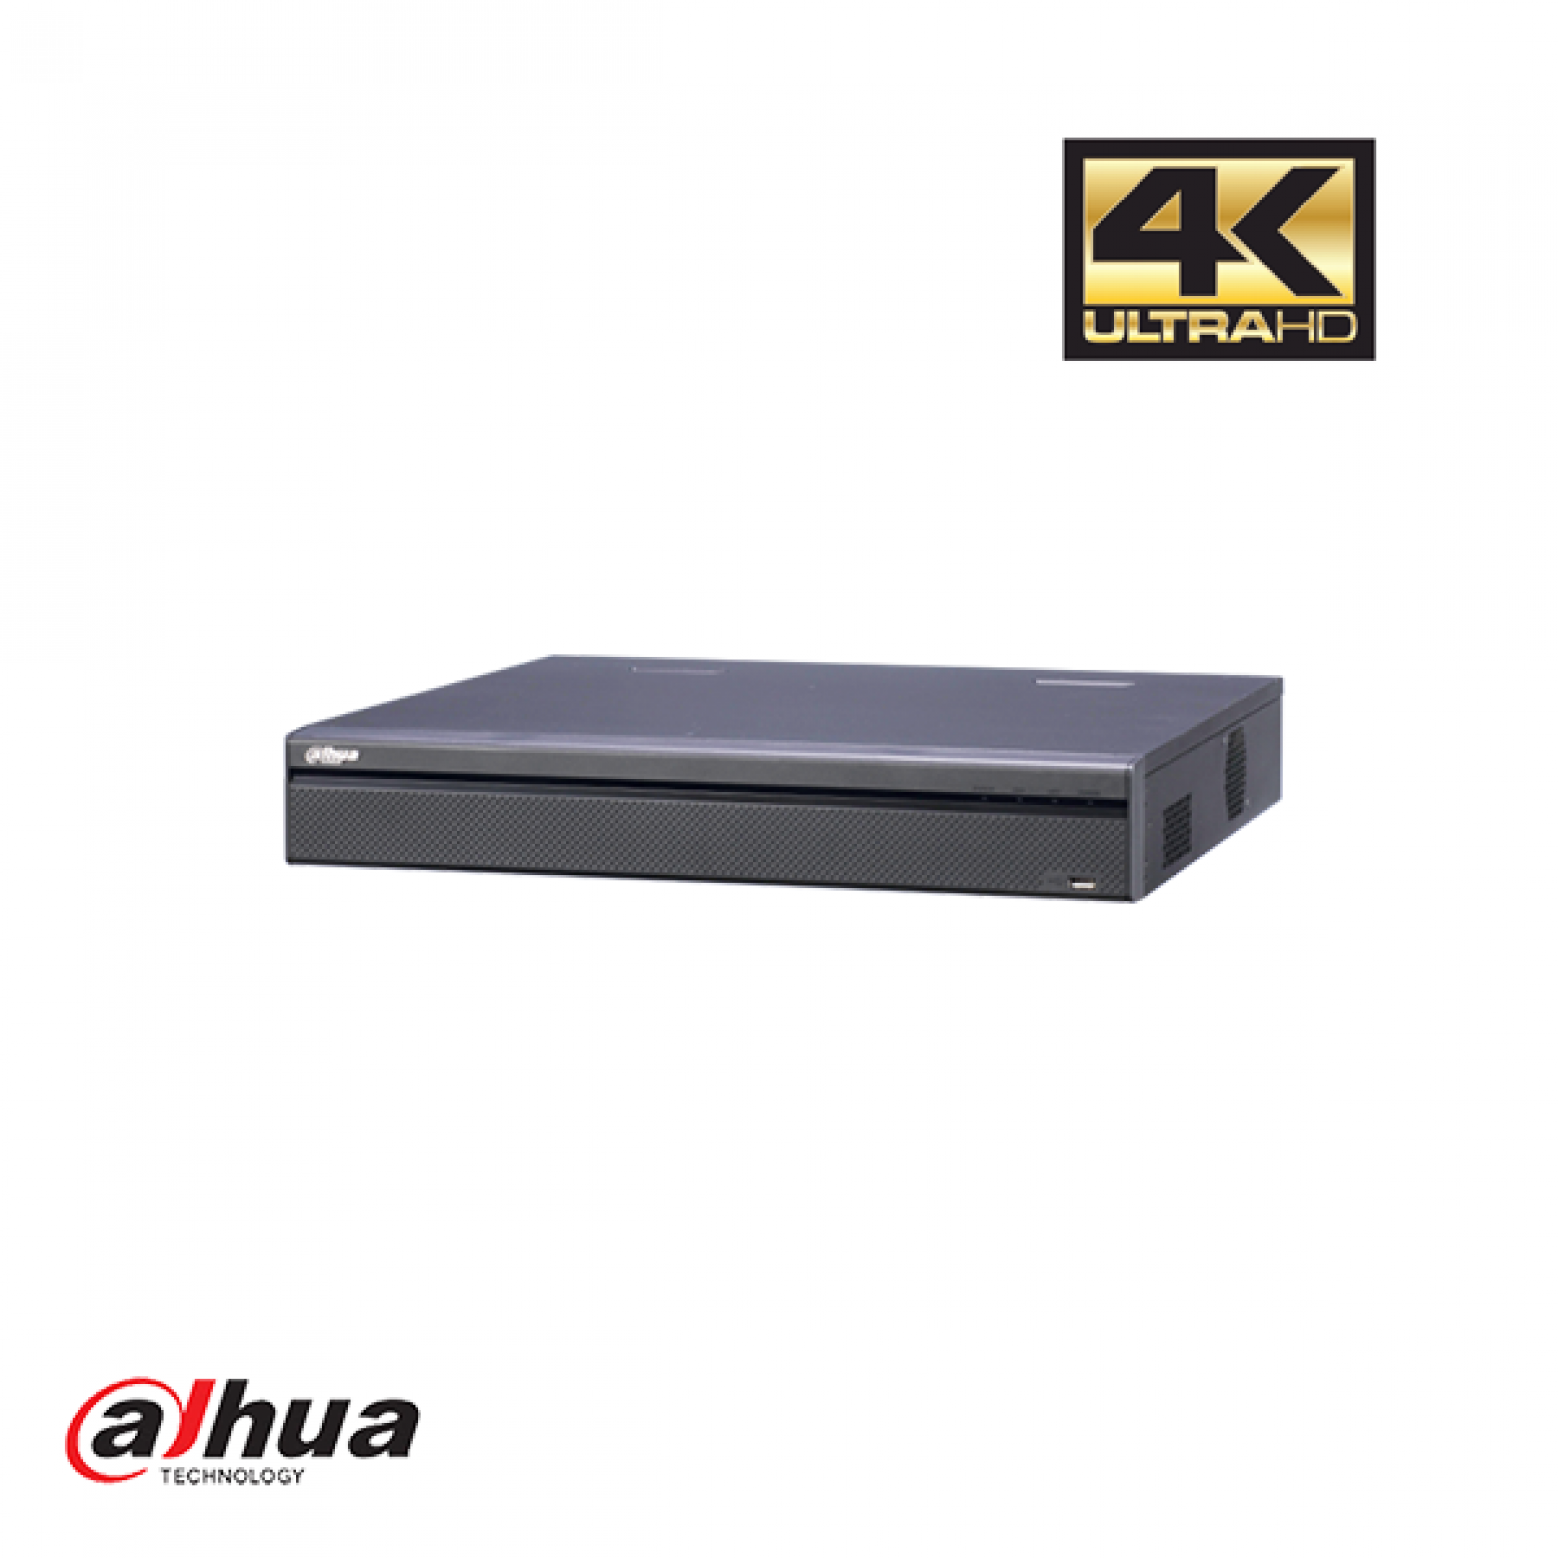 Dahua NVR4432-4KS2 32 kanalen 4K NVR incl 2 TB HDD